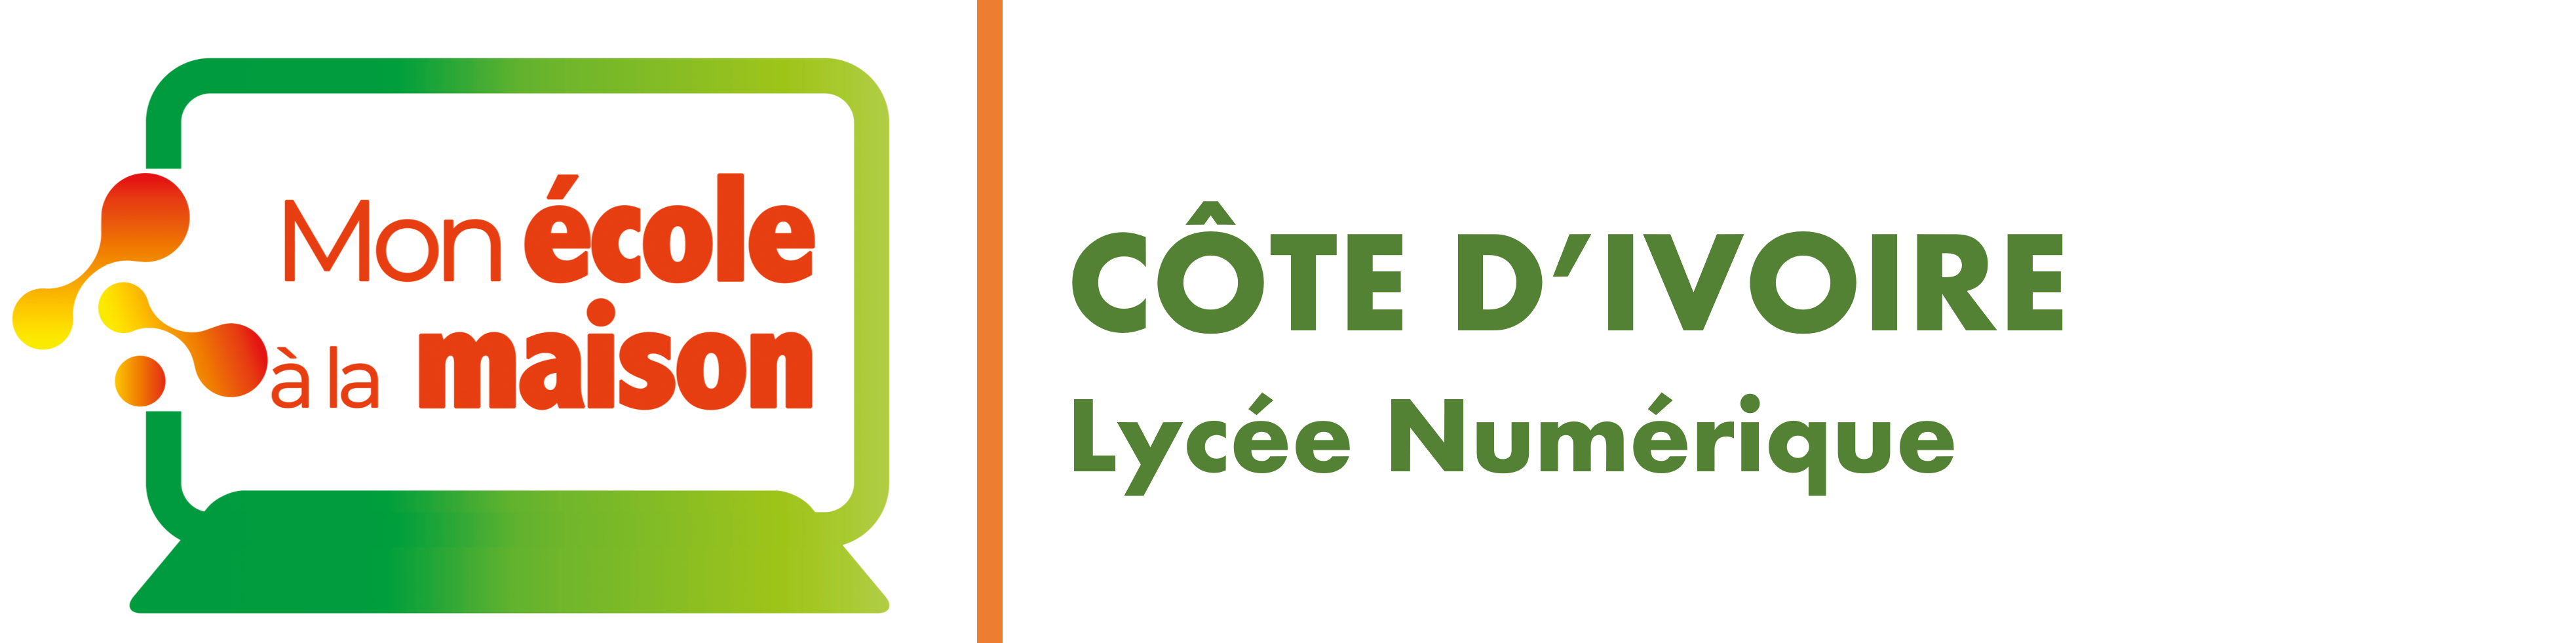 CÔTE D'IVOIRE Lycée Numérique